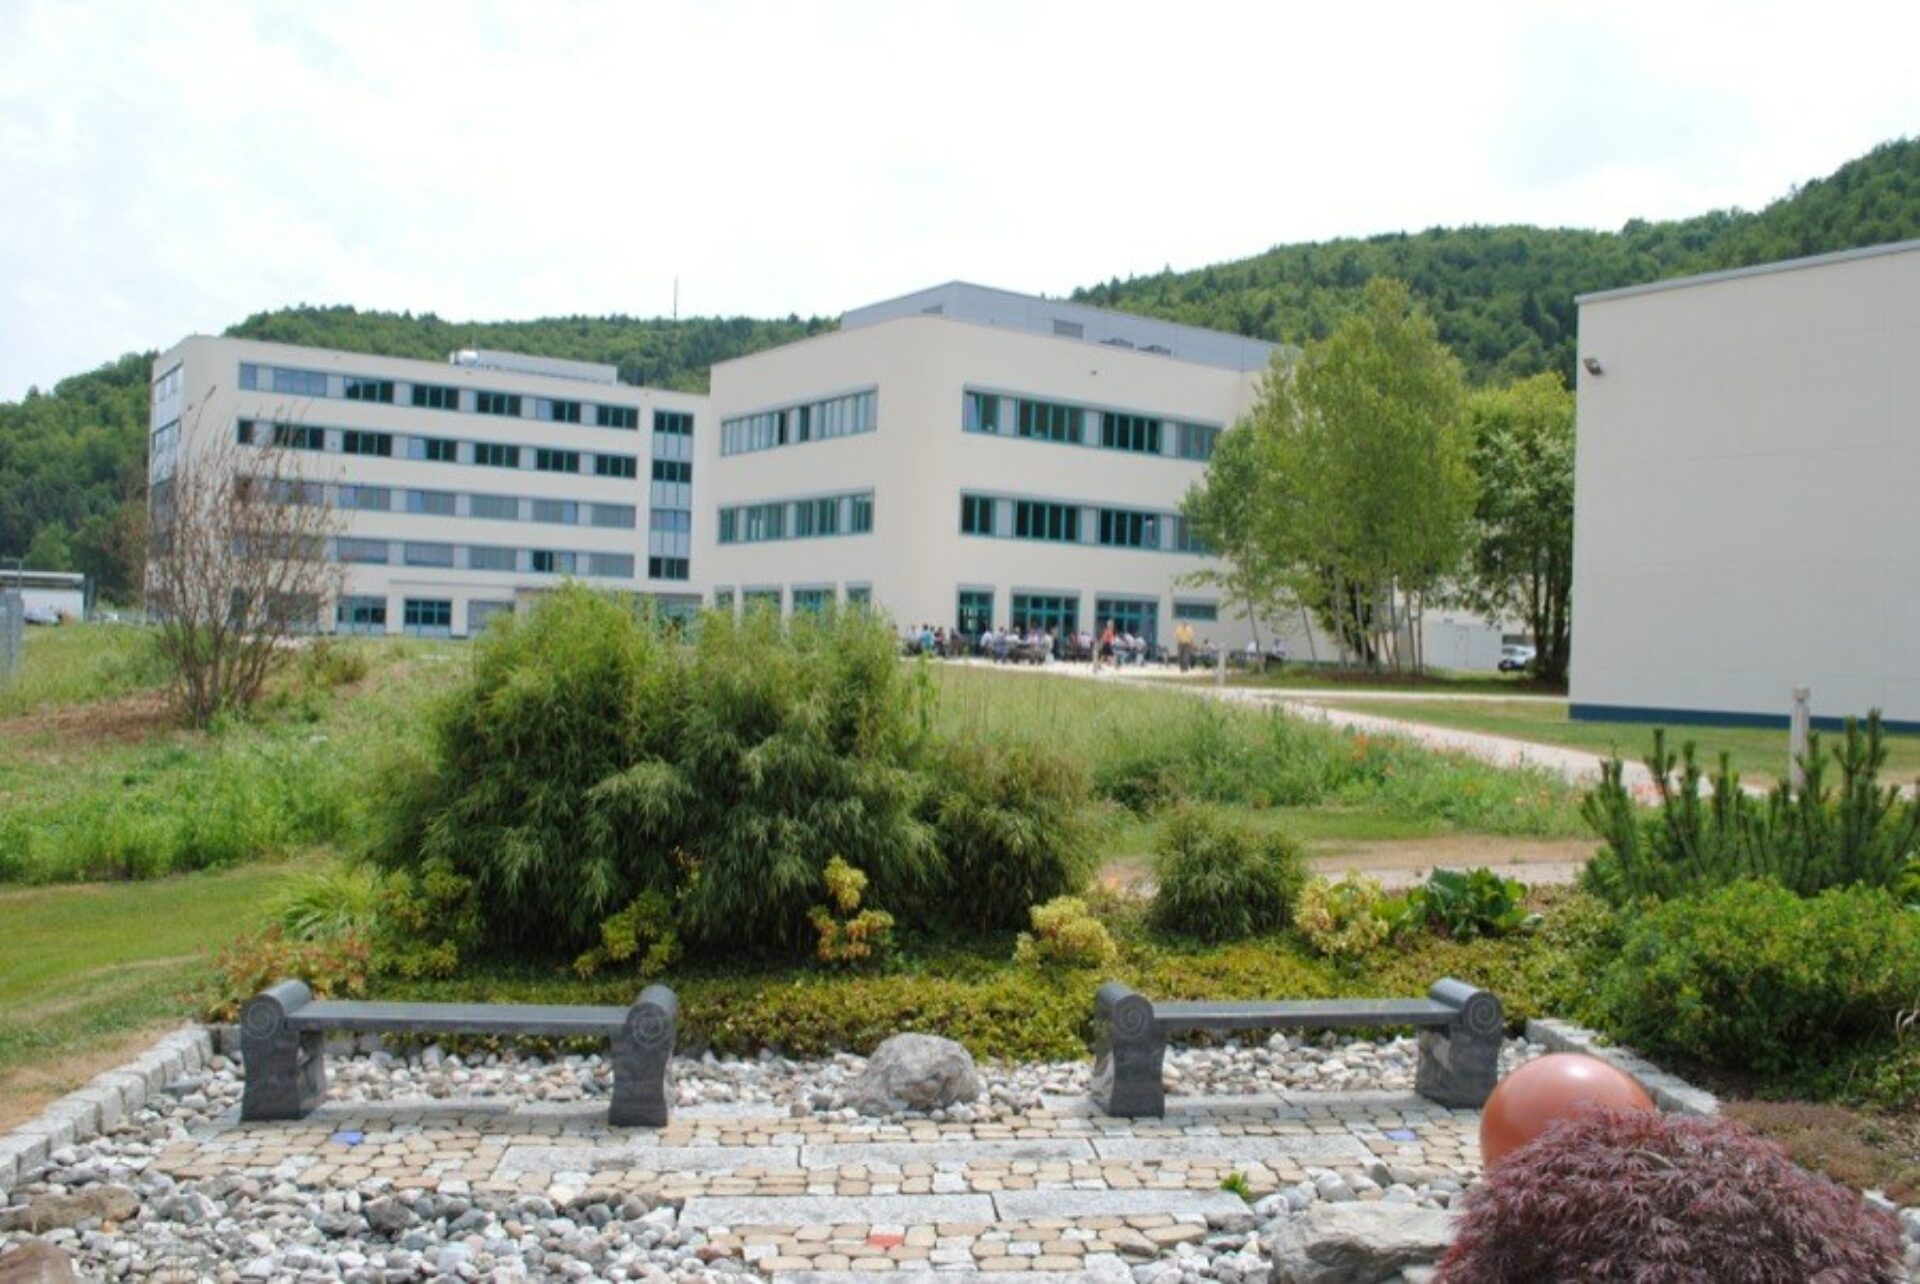 Centrotherm Fabrikerweiterung – Büro- und Produktionskomplex PV-Industrie1143